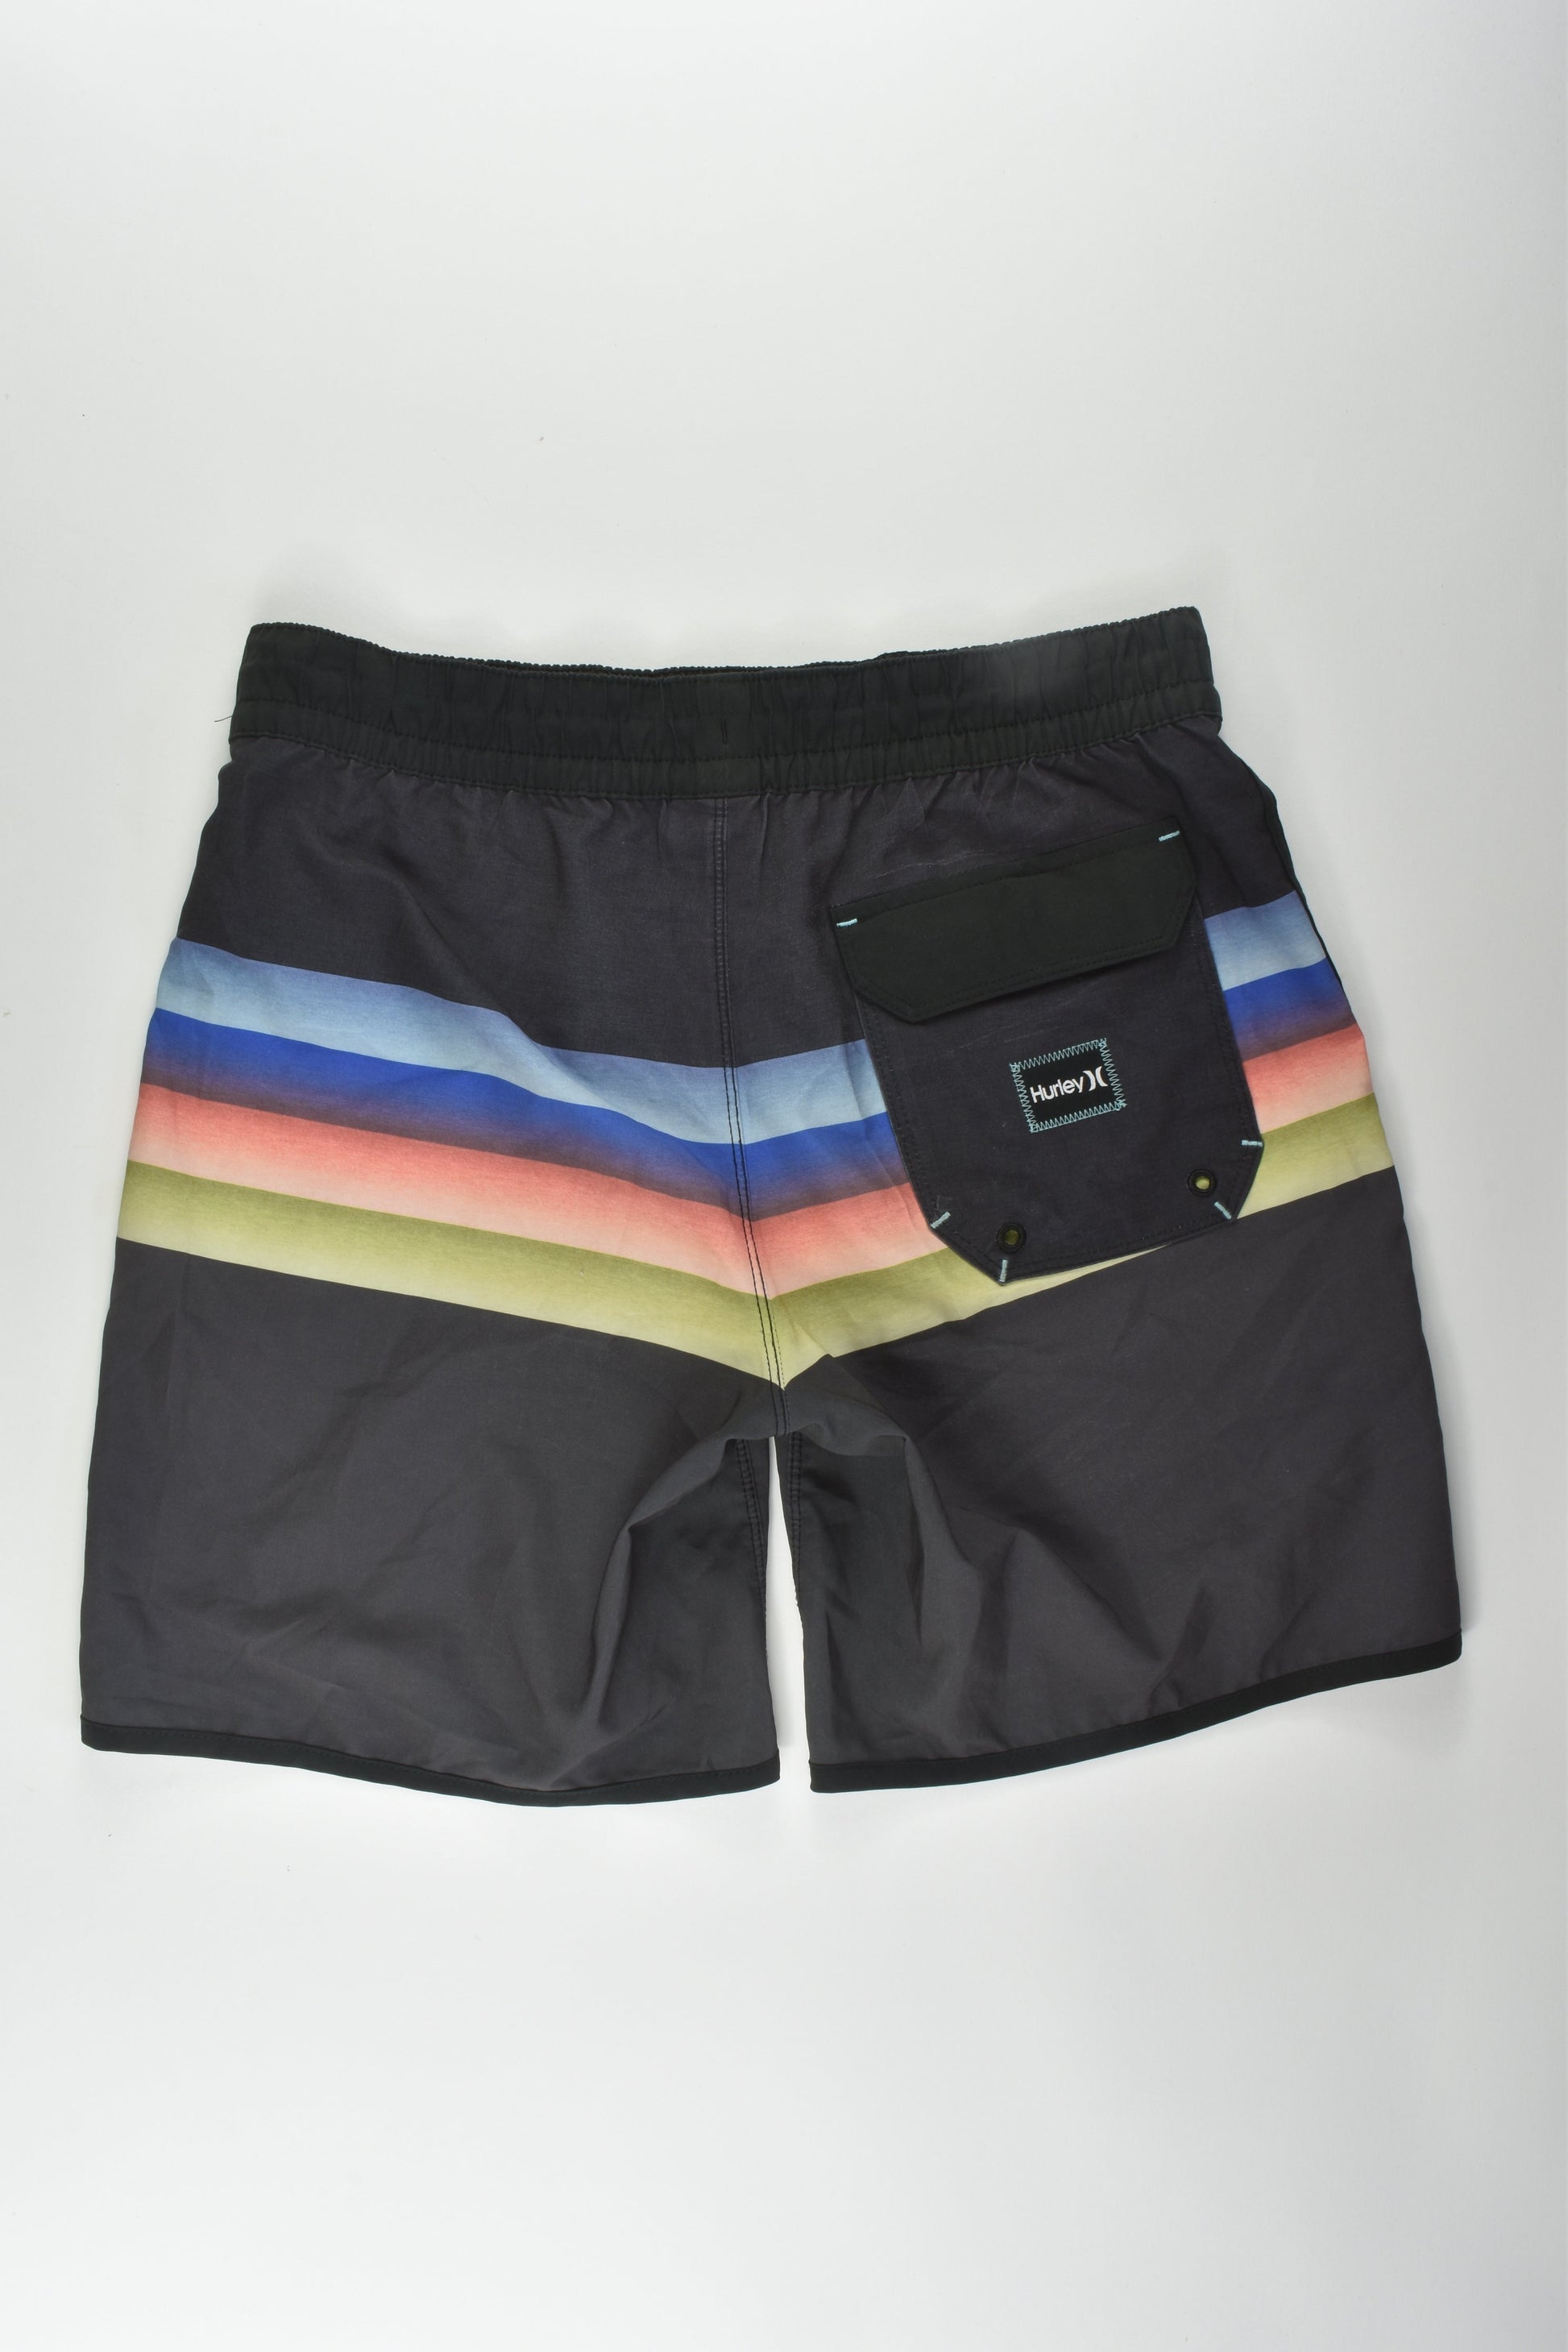 Hurley Size 14 Board Shorts